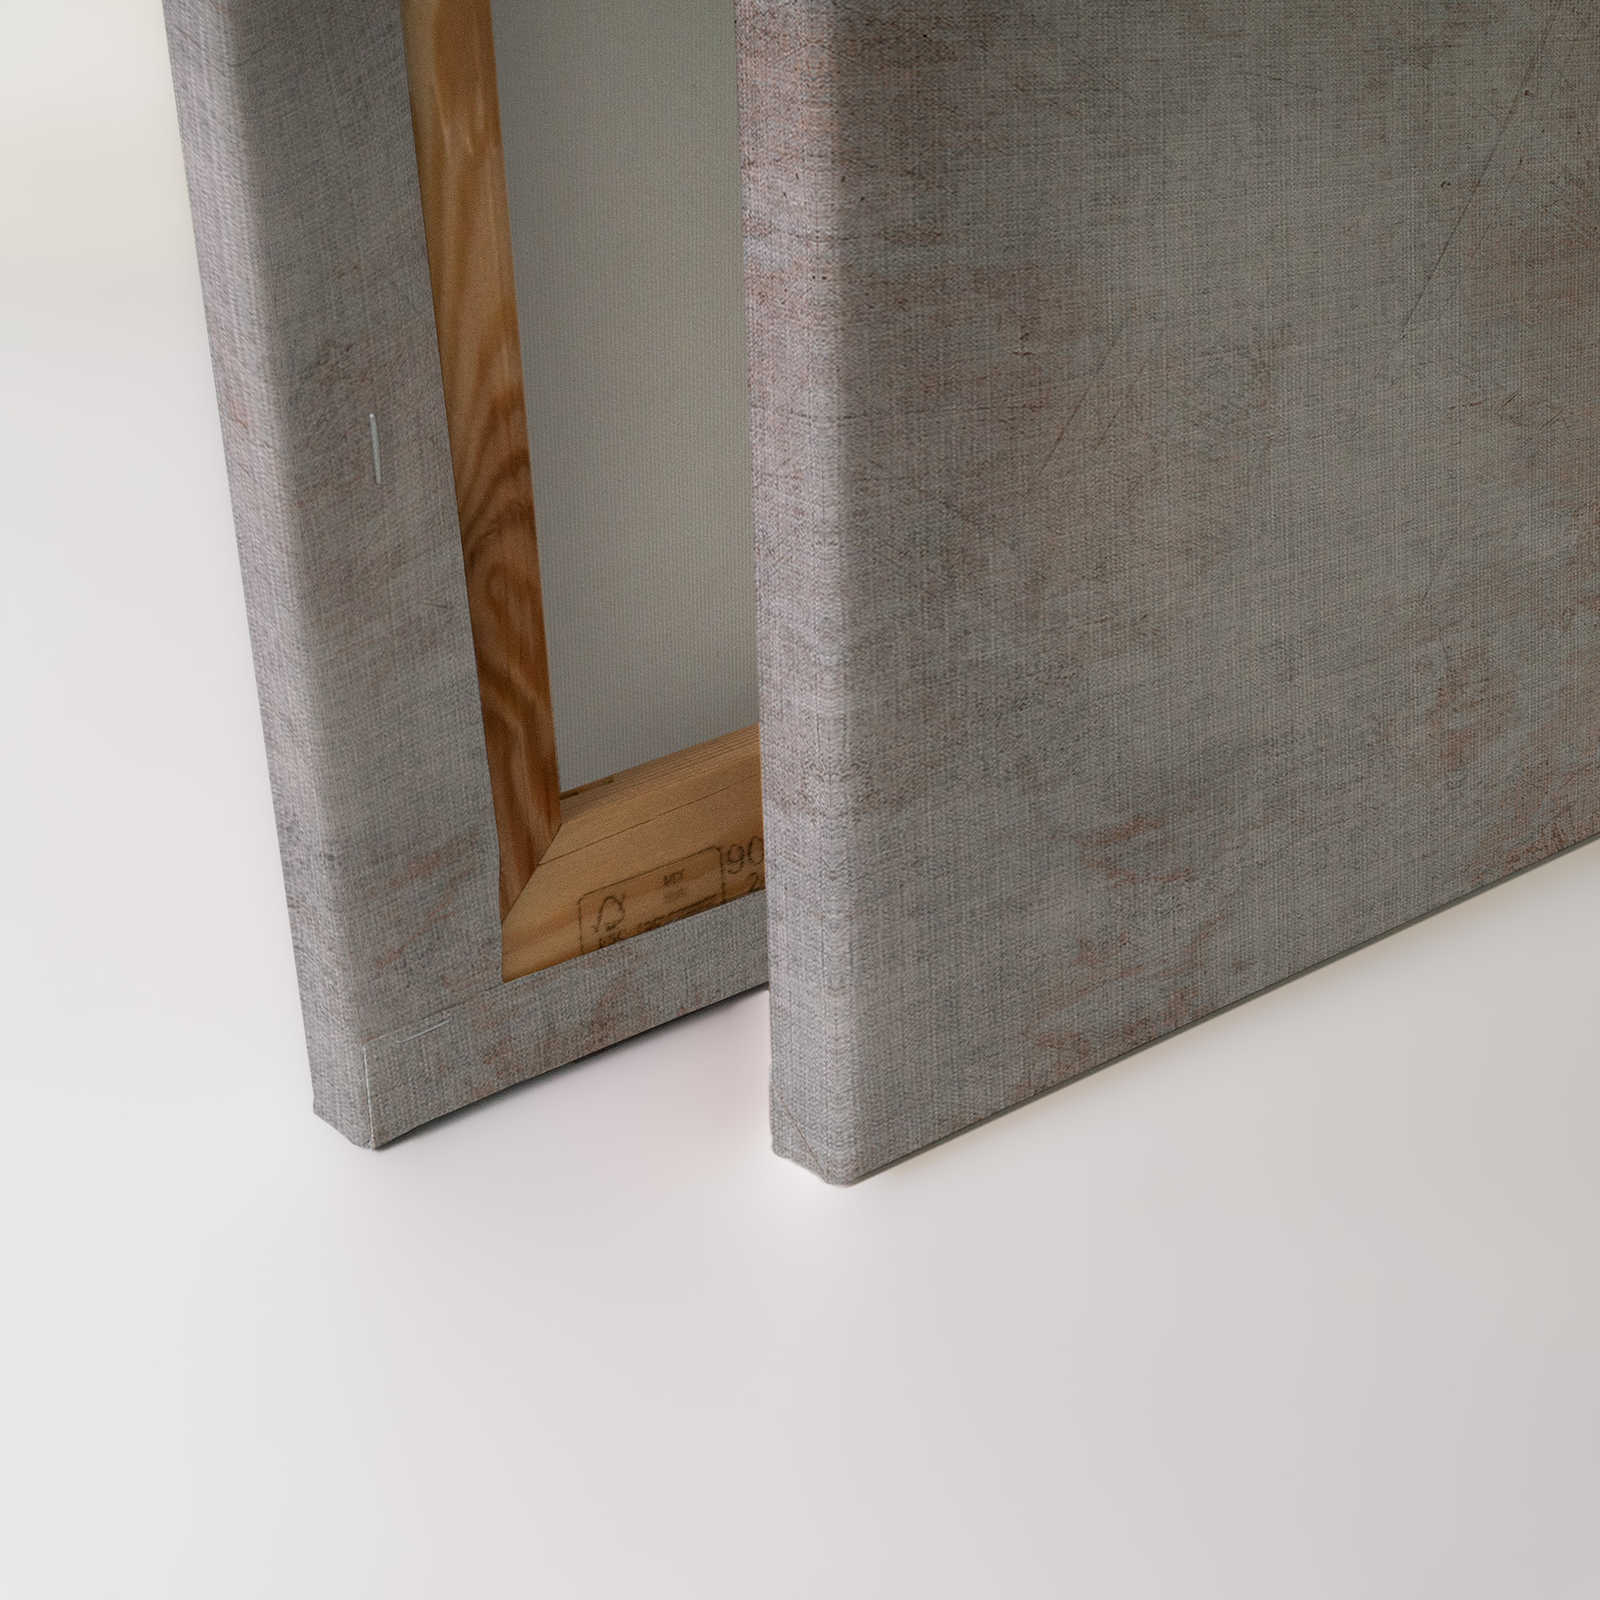             Big three 2 - Quadro su tela, struttura in lino naturale effetto cemento con bufalo - 0,90 m x 0,60 m
        